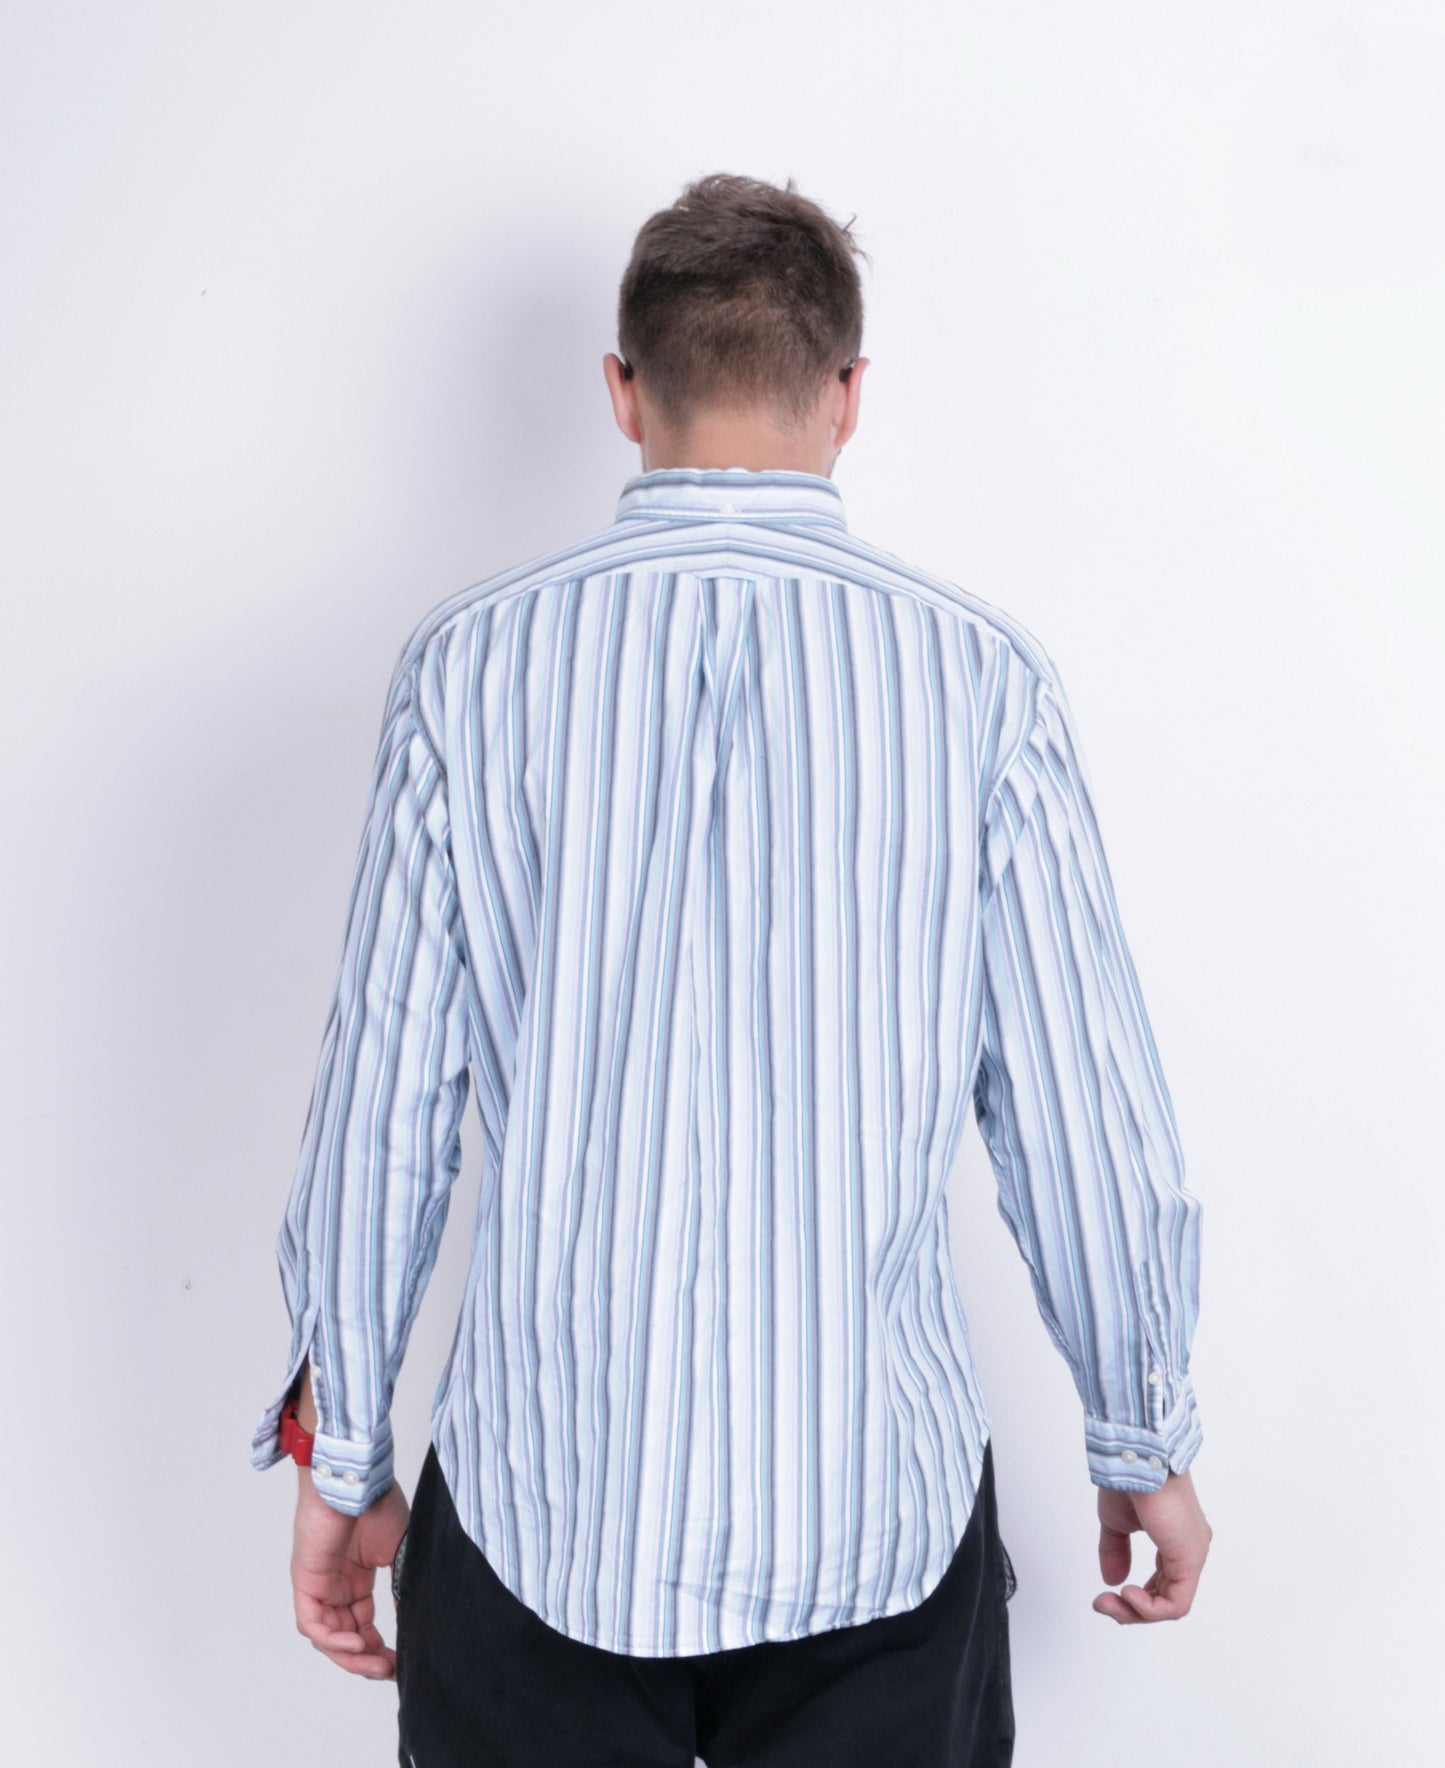 T.M. Lewin Mens L Casual Shirt Striped Blue Classic Fit Cotton - RetrospectClothes